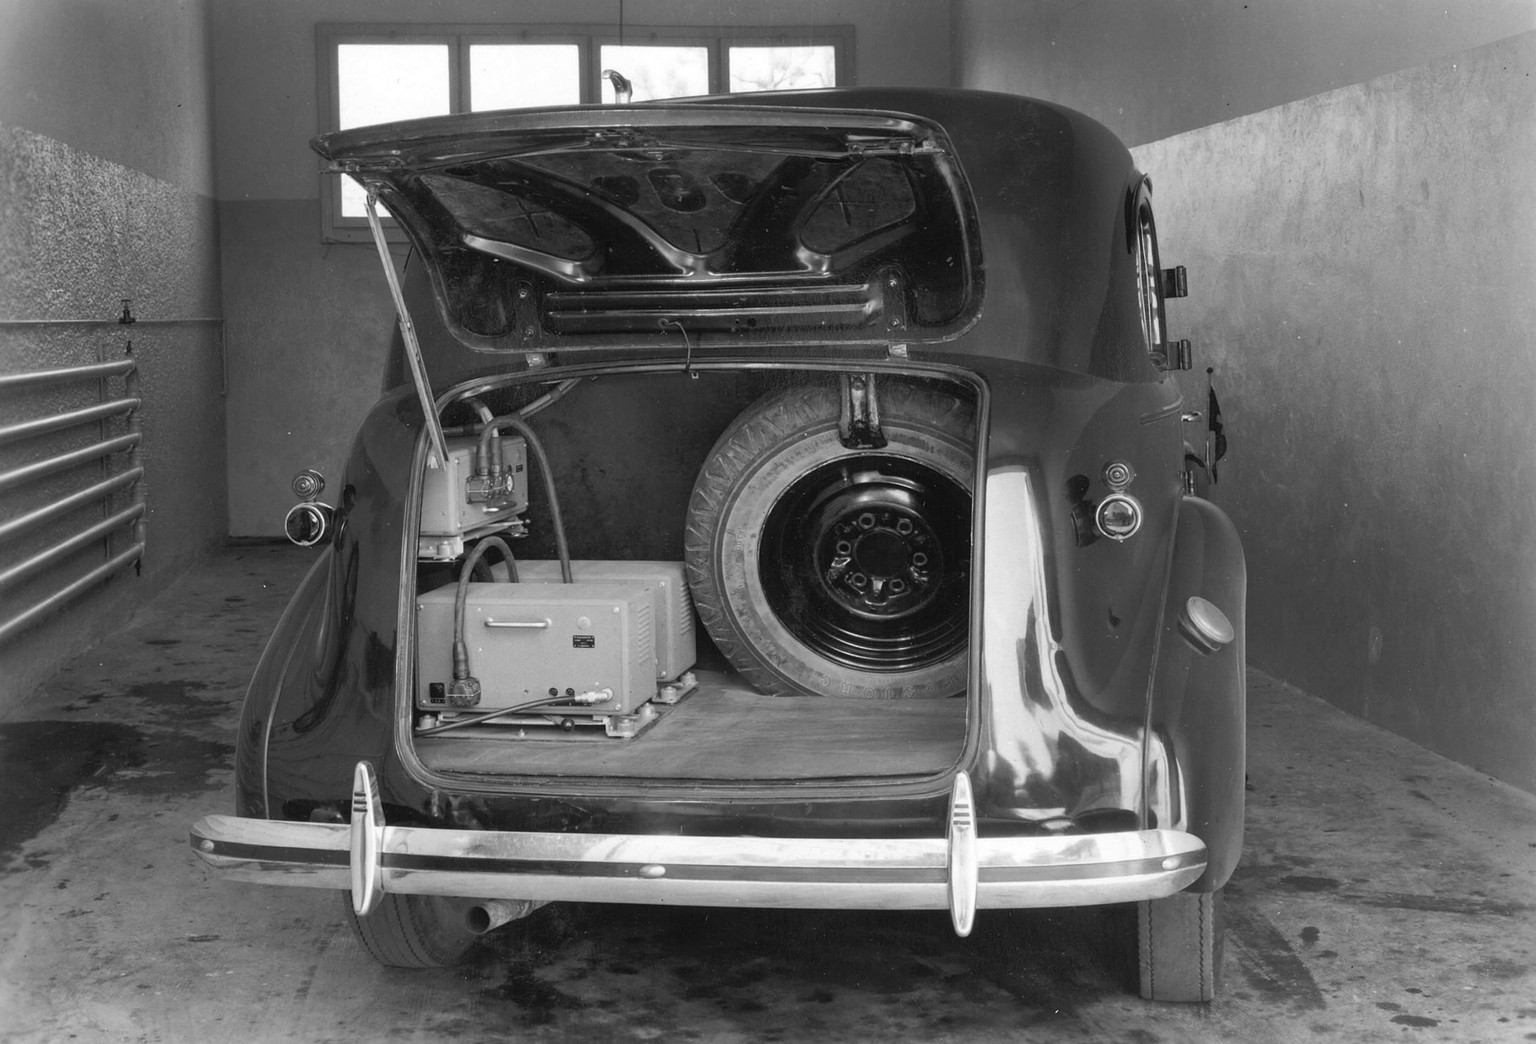 Die Technik des Radiovox-Systems füllte den halben Kofferraum. Aufnahme aus den 1950er Jahren.